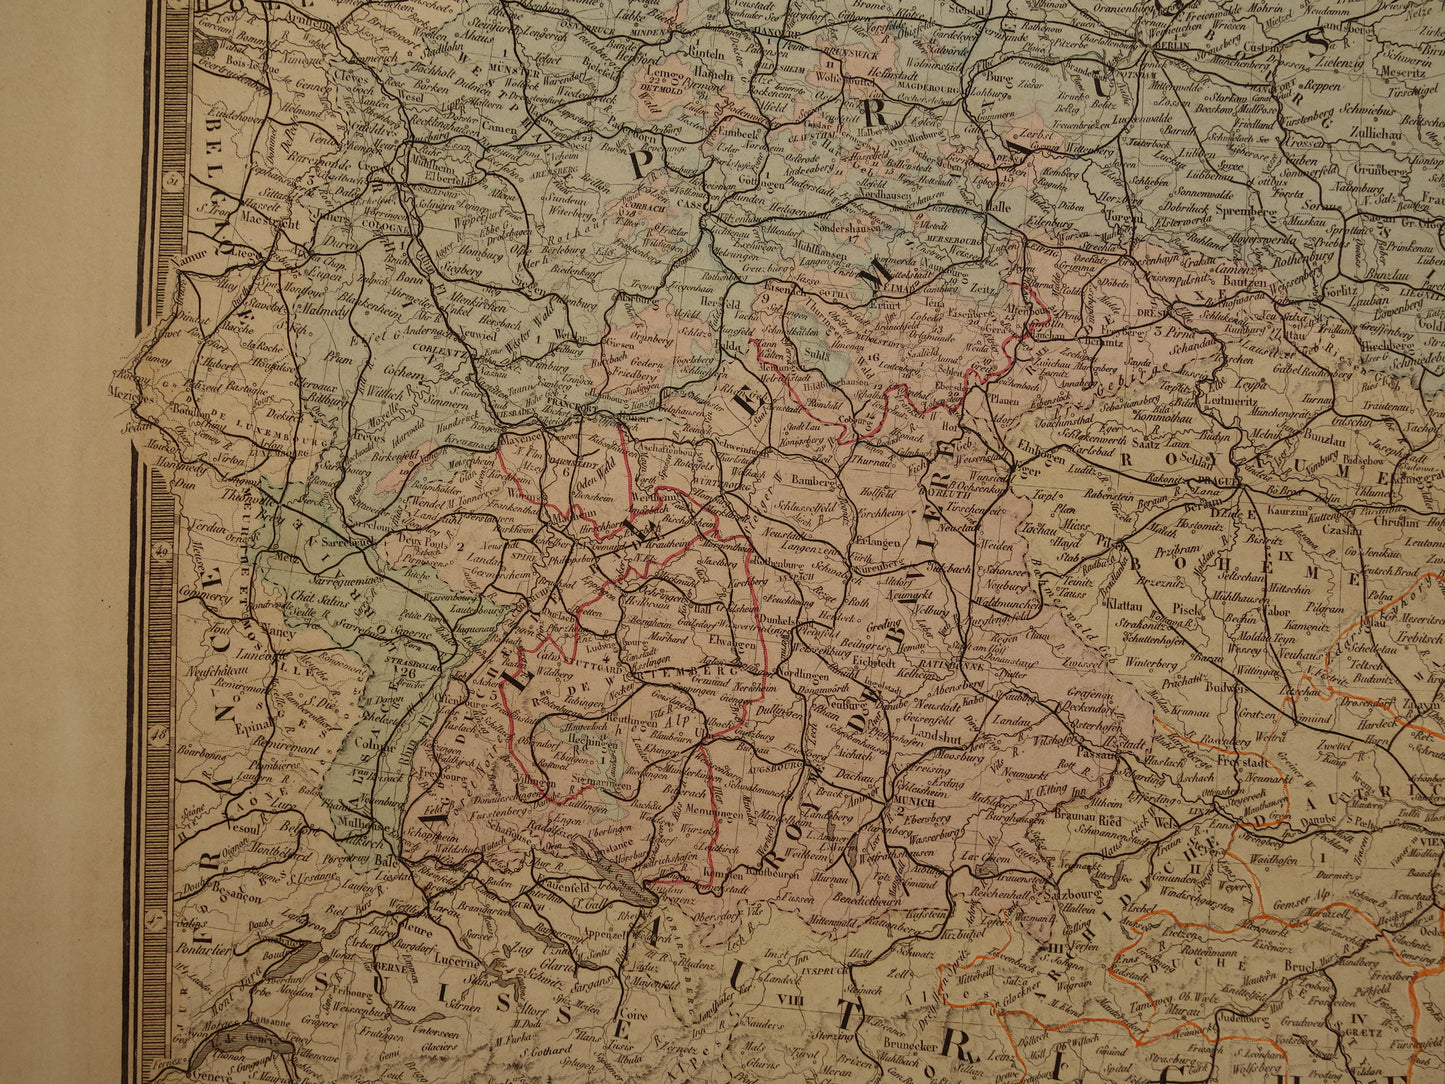 Kaart van Centraal-Europa in 1876 originele antieke handgekleurde oude landkaart poster van Duitsland, Polen Oostenrijk en Tsjechië